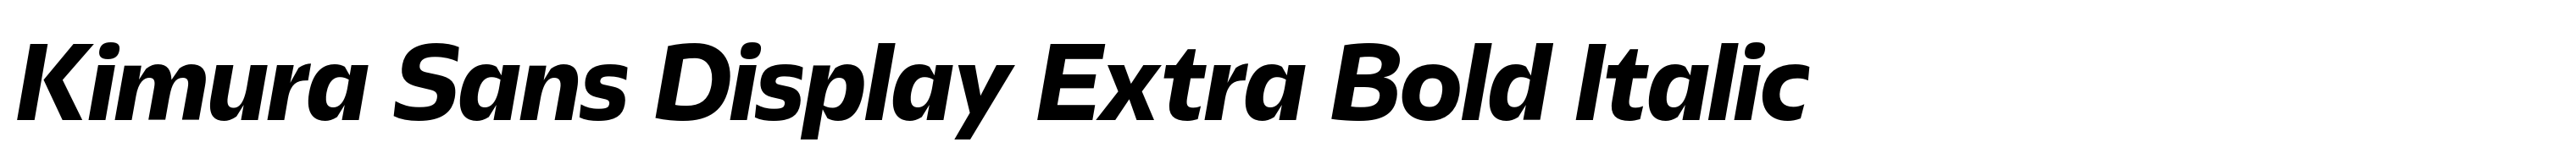 Kimura Sans Display Extra Bold Italic